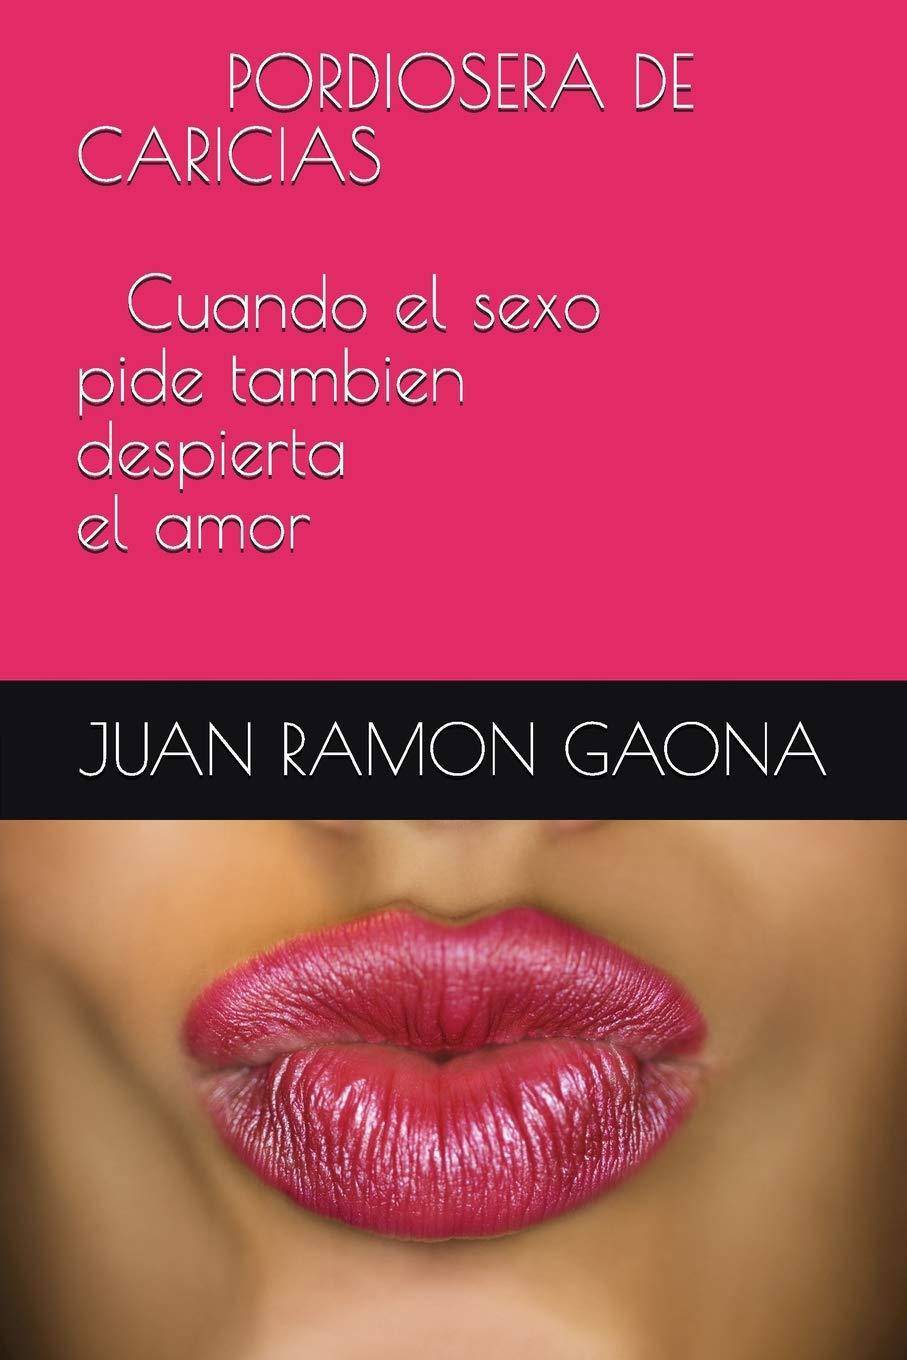 PORDIOSERA DE CARICIAS Cuando el sexo pide tambien despierta el amor - SureShot Books Publishing LLC